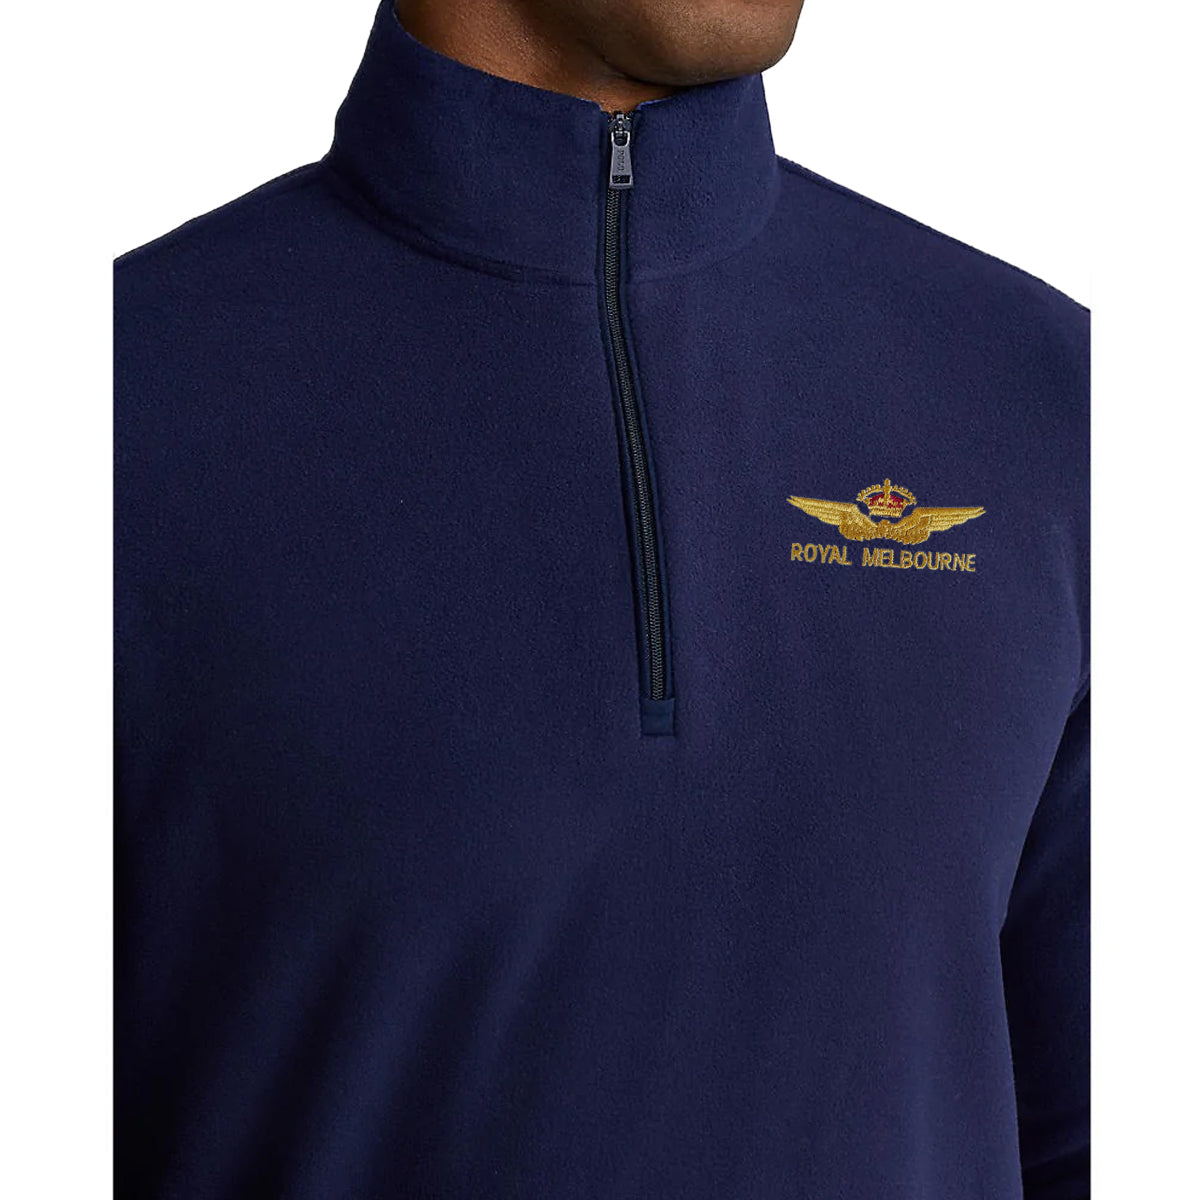 Polo Golf Ralph Lauren Tour Fleece 1/4 Zip With Royal Melbourne Logo - French Navy